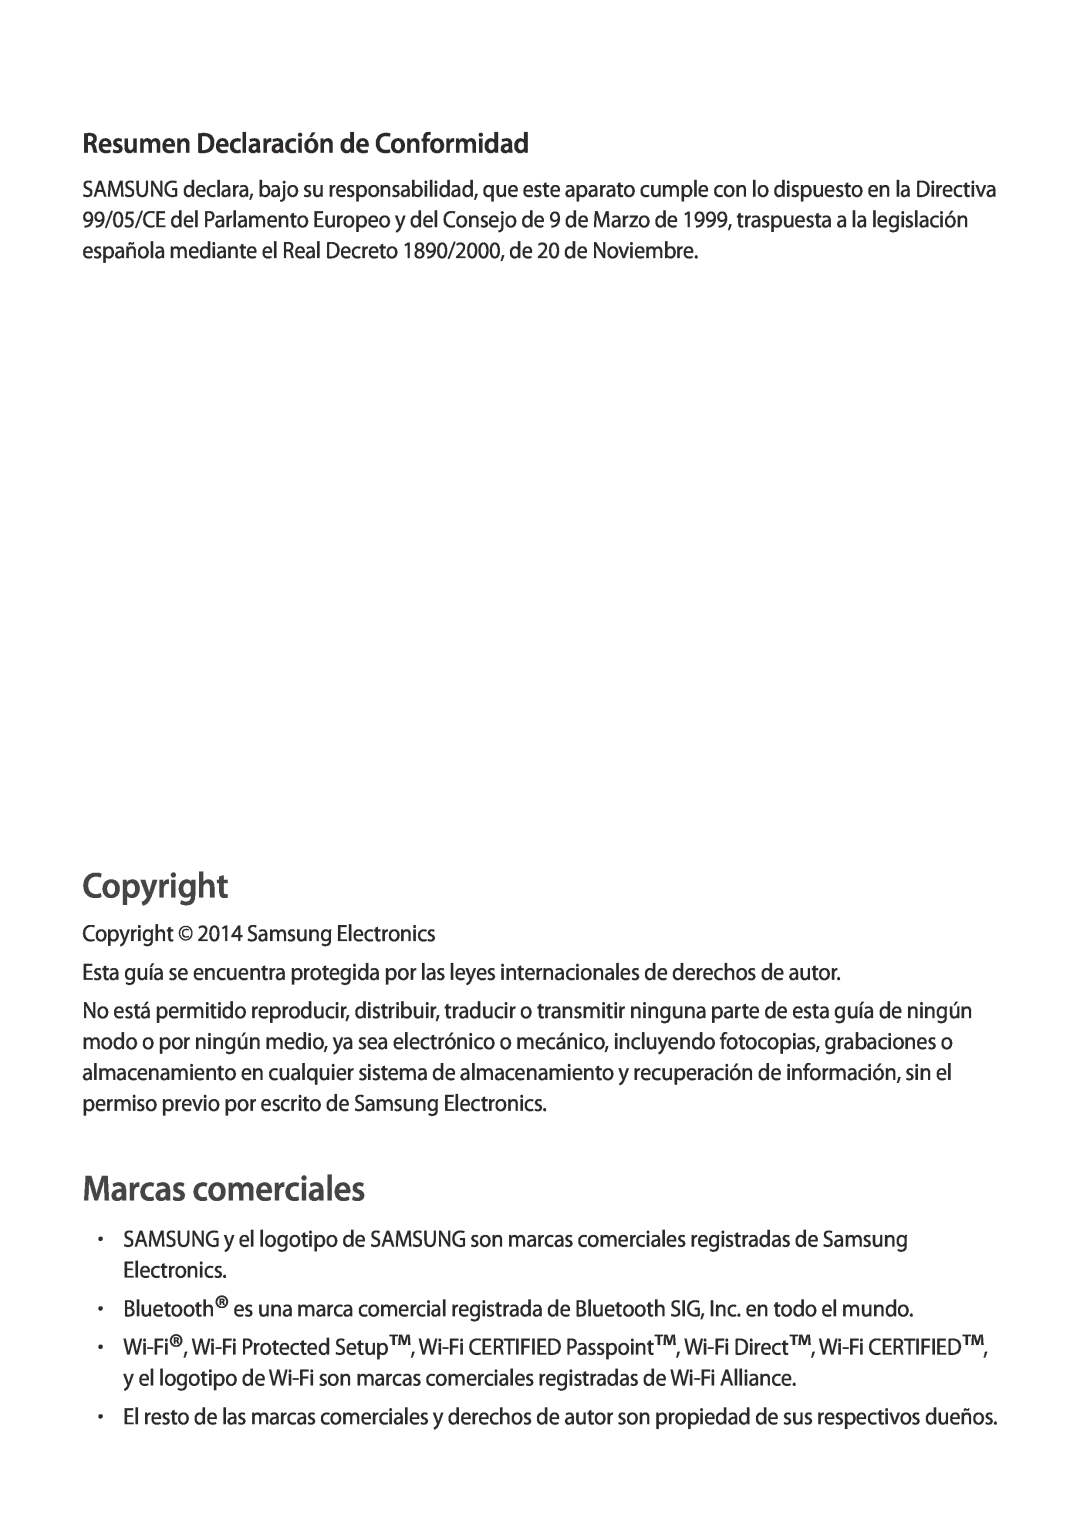 Samsung SM-T700NTSAPHE, SM-T700NZWAXEO, SM-T700NZWADBT Resumen Declaración de Conformidad, Copyright, Marcas comerciales 